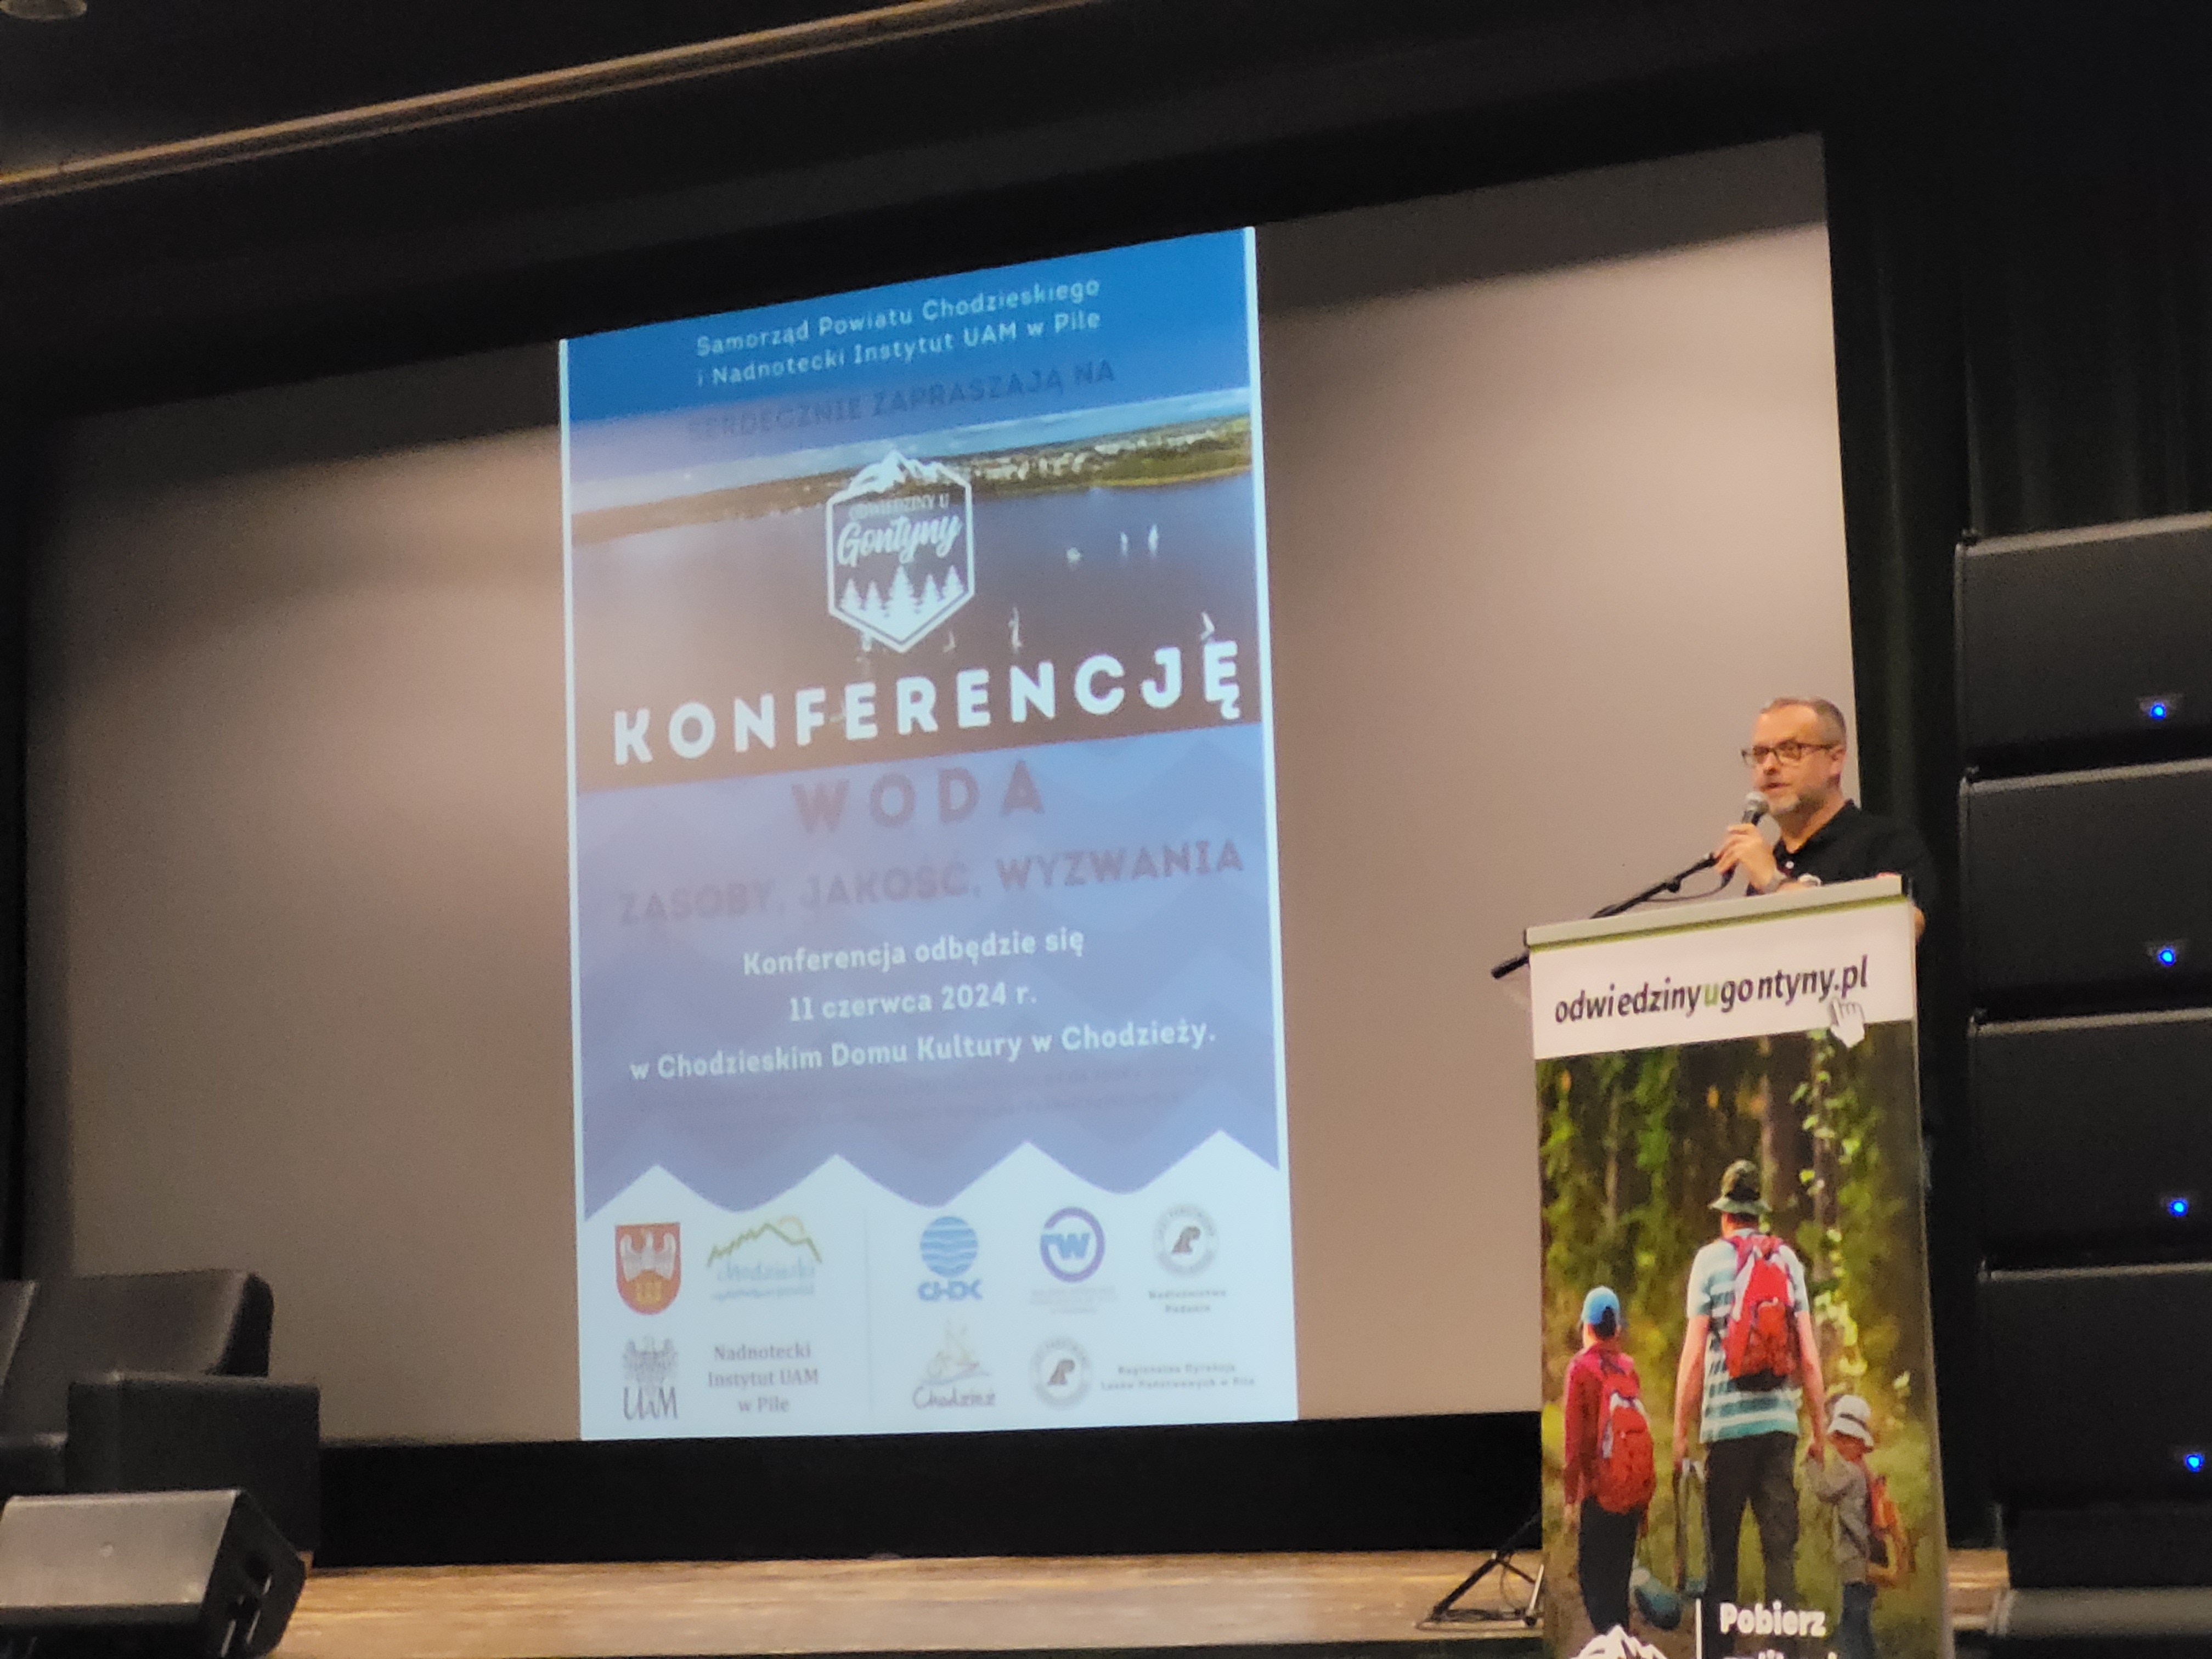 konferencja woda Chodzież - Marek Wolski